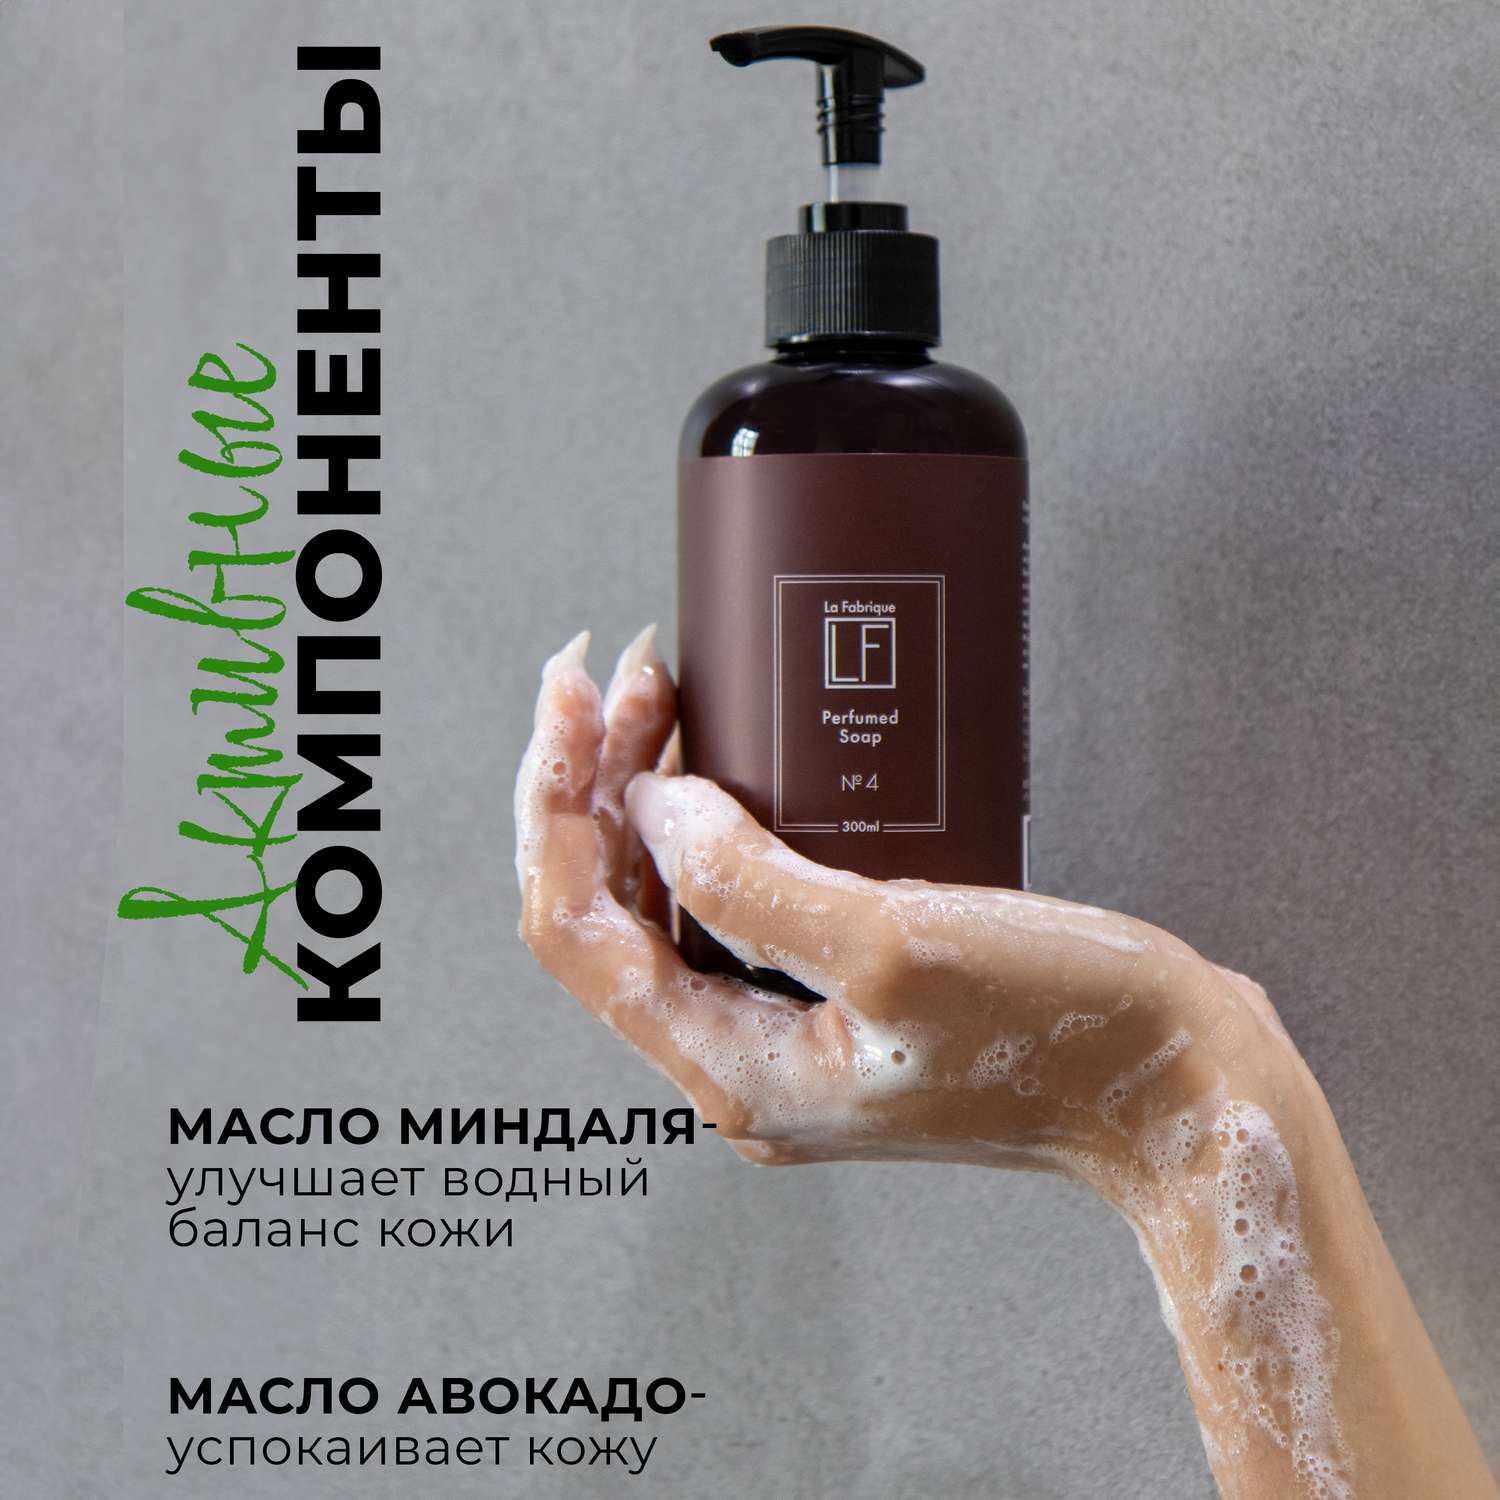 Жидкое мыло La Fabrique парфюмированное с ароматами туберозы и уд с неролью 300 мл * 2 шт - фото 5